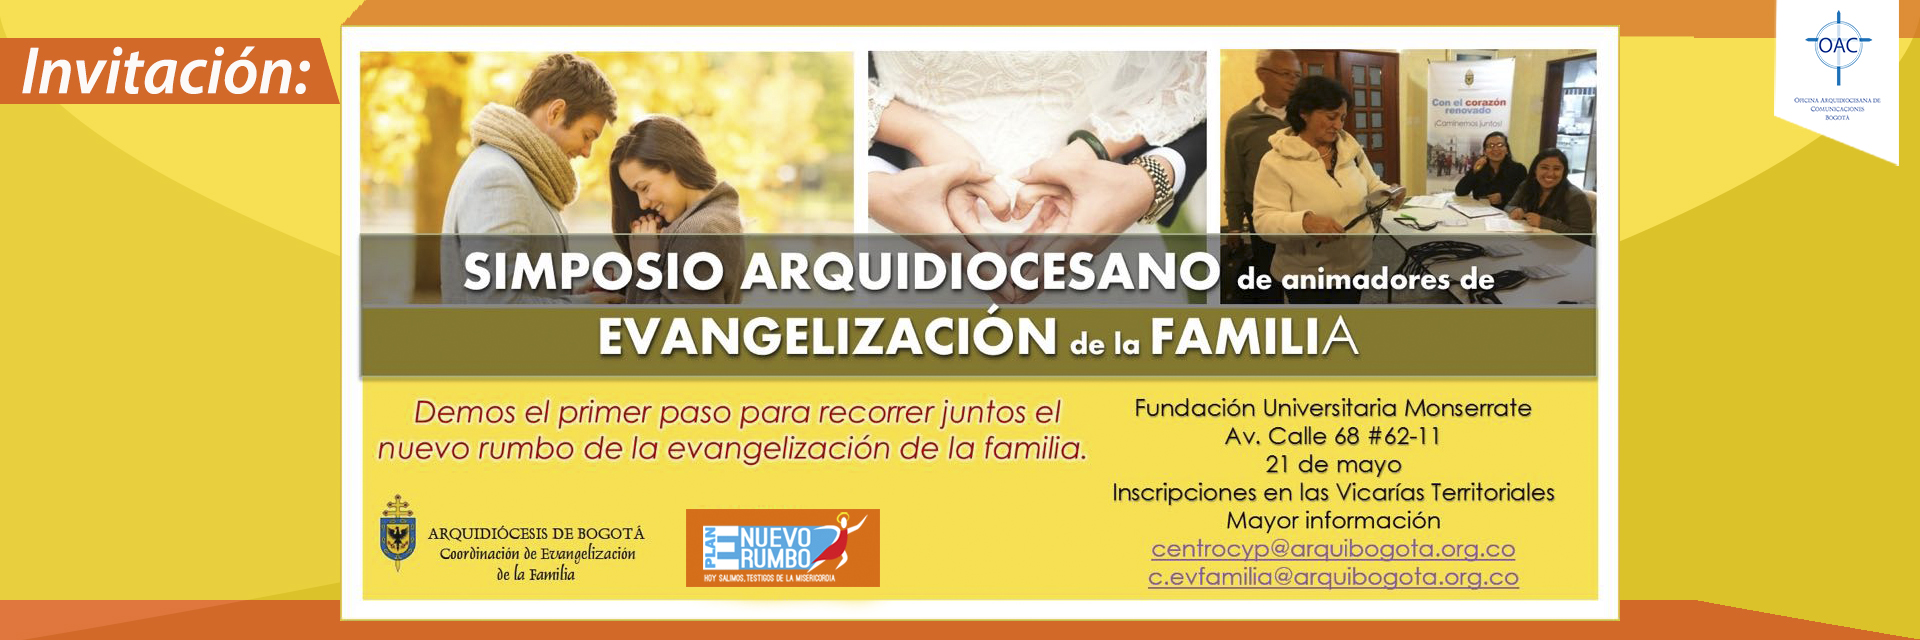 Simposio arquidiocesano de evangelización de la familia